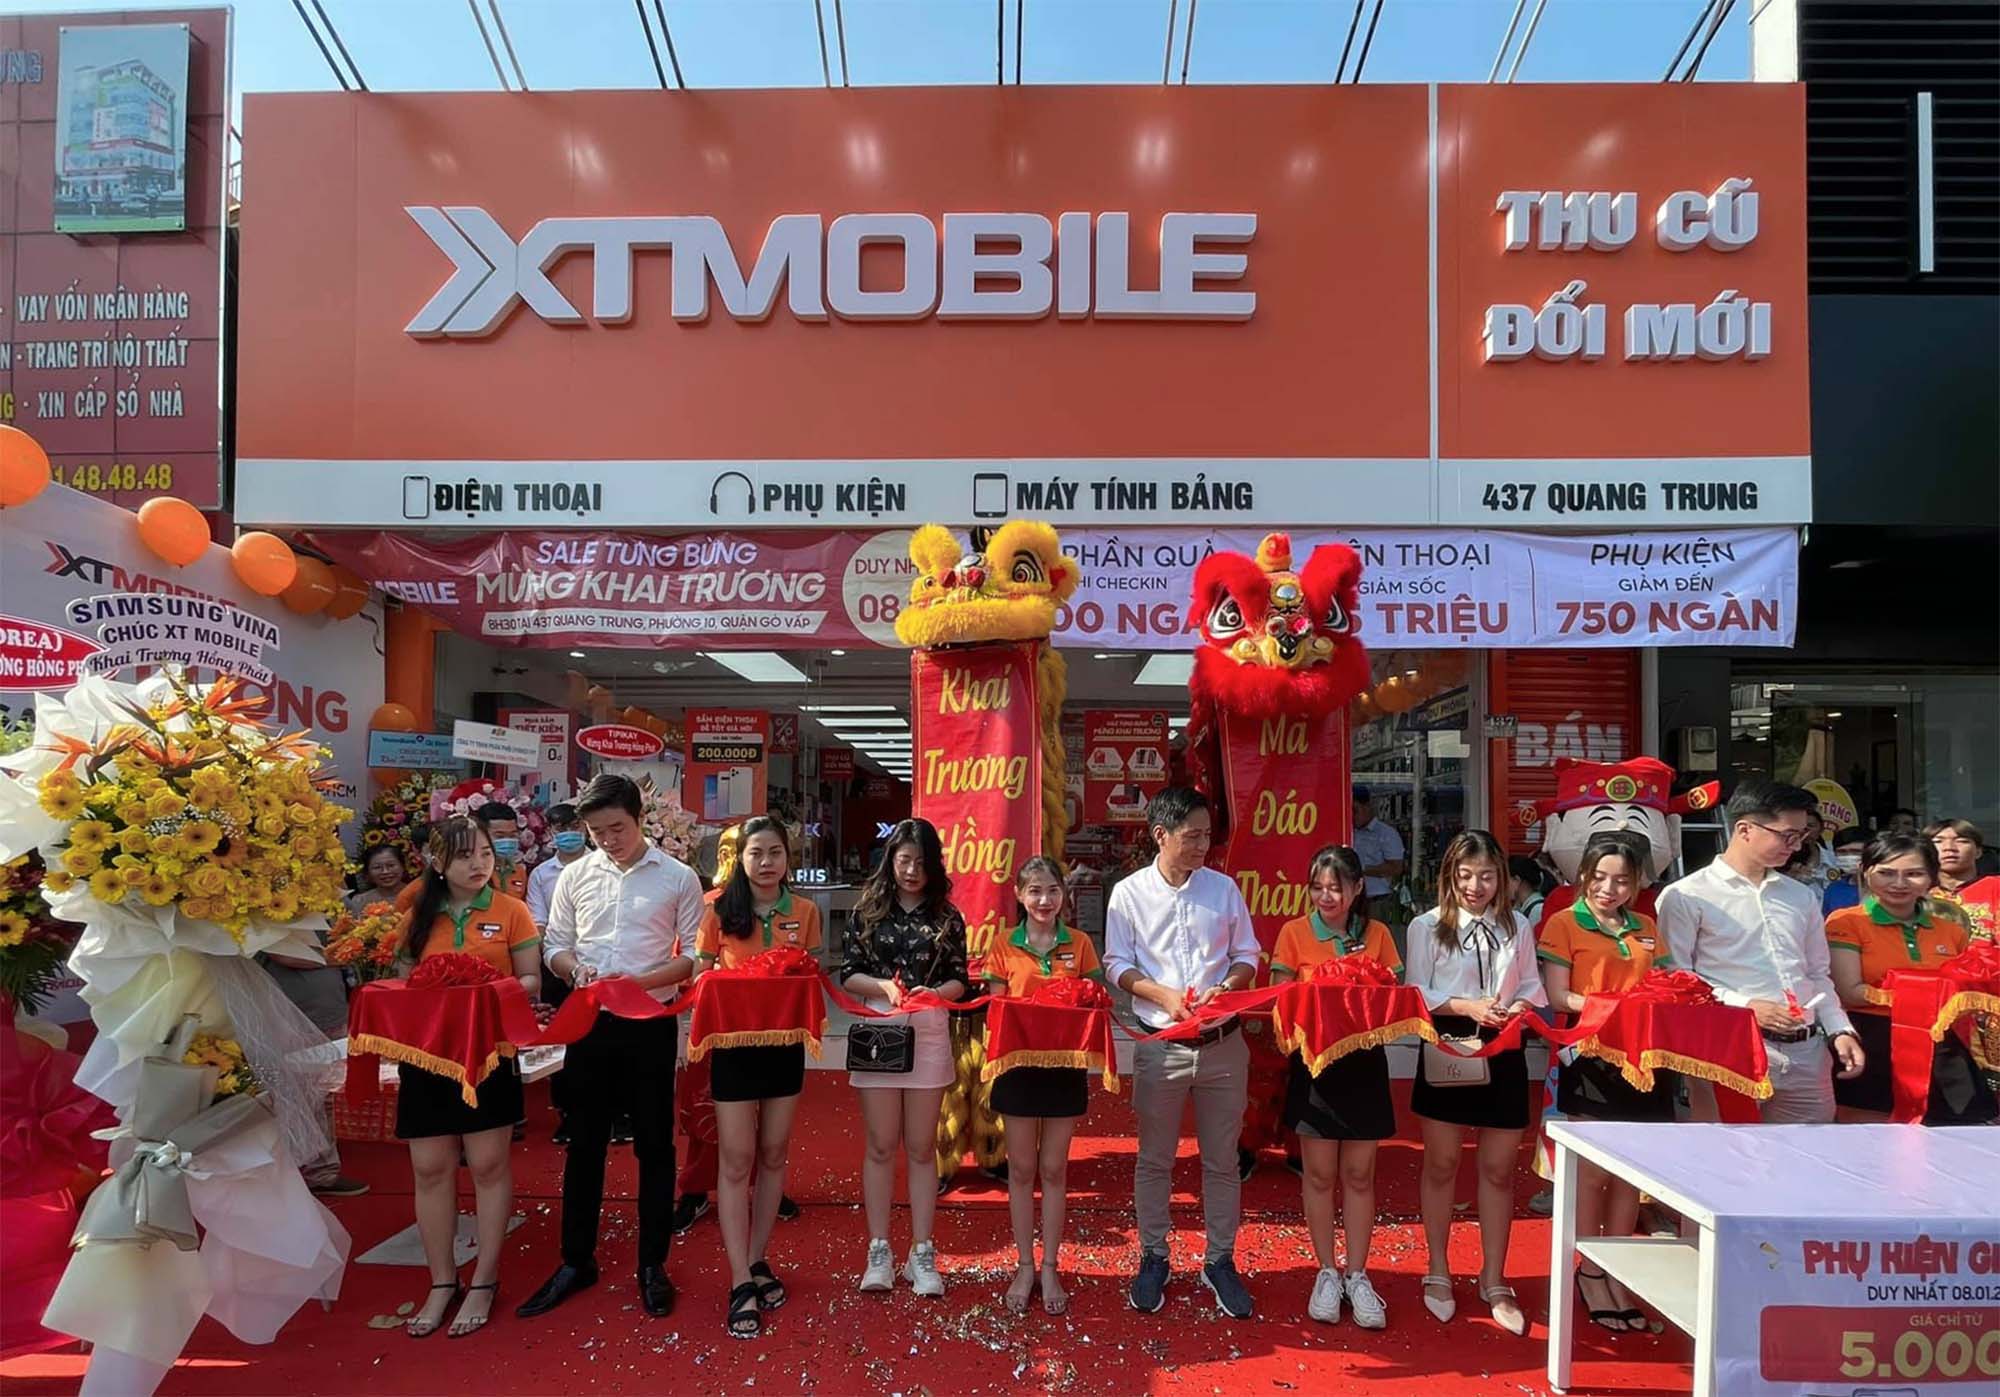 XTMobile khai trương chi nhánh mới tại 437 Quang Trung, Phường 10, Quận Gò Vấp